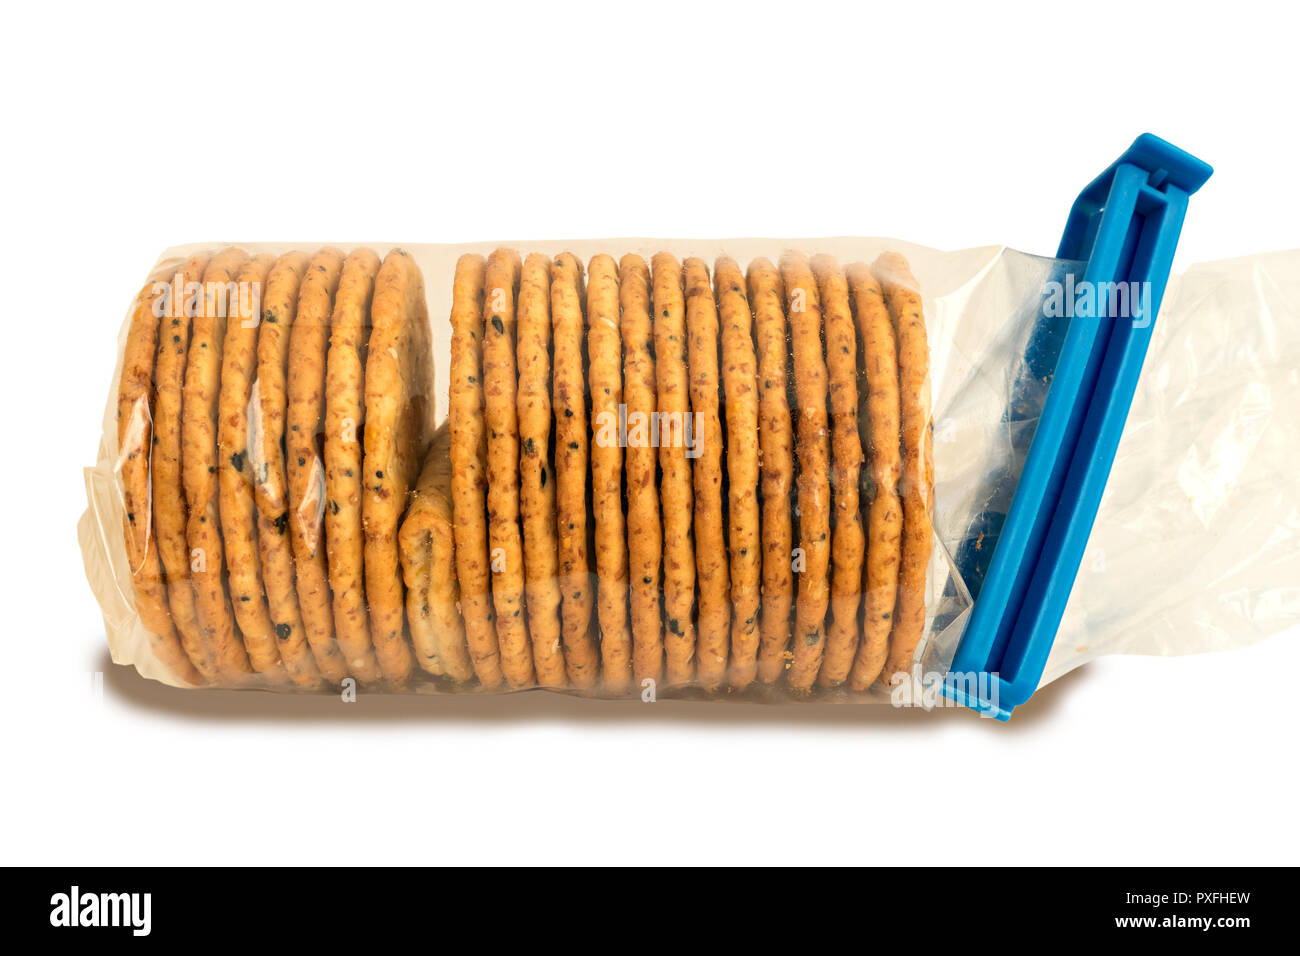 'L'Intrus' un paquet de biscuits emballés sous cellophane claire avec un cracker pliée défectueux illustrant un problème ou d'échec dans le contrôle de la qualité. Banque D'Images